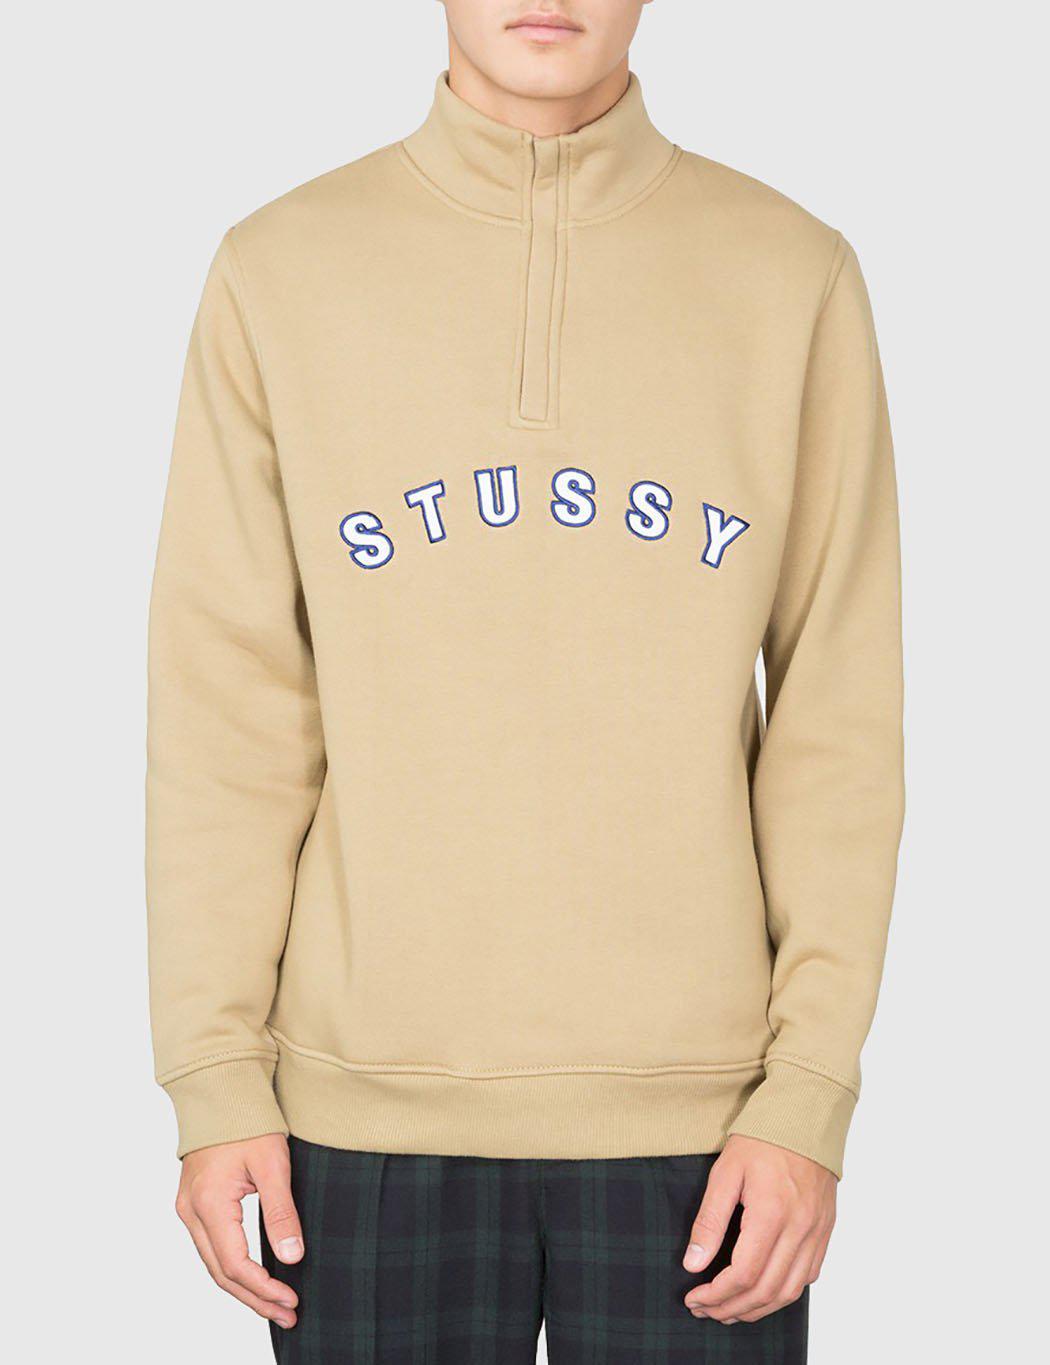 Download Lyst - Stussy Quarter Zip Mock Neck Sweatshirt in Brown for Men